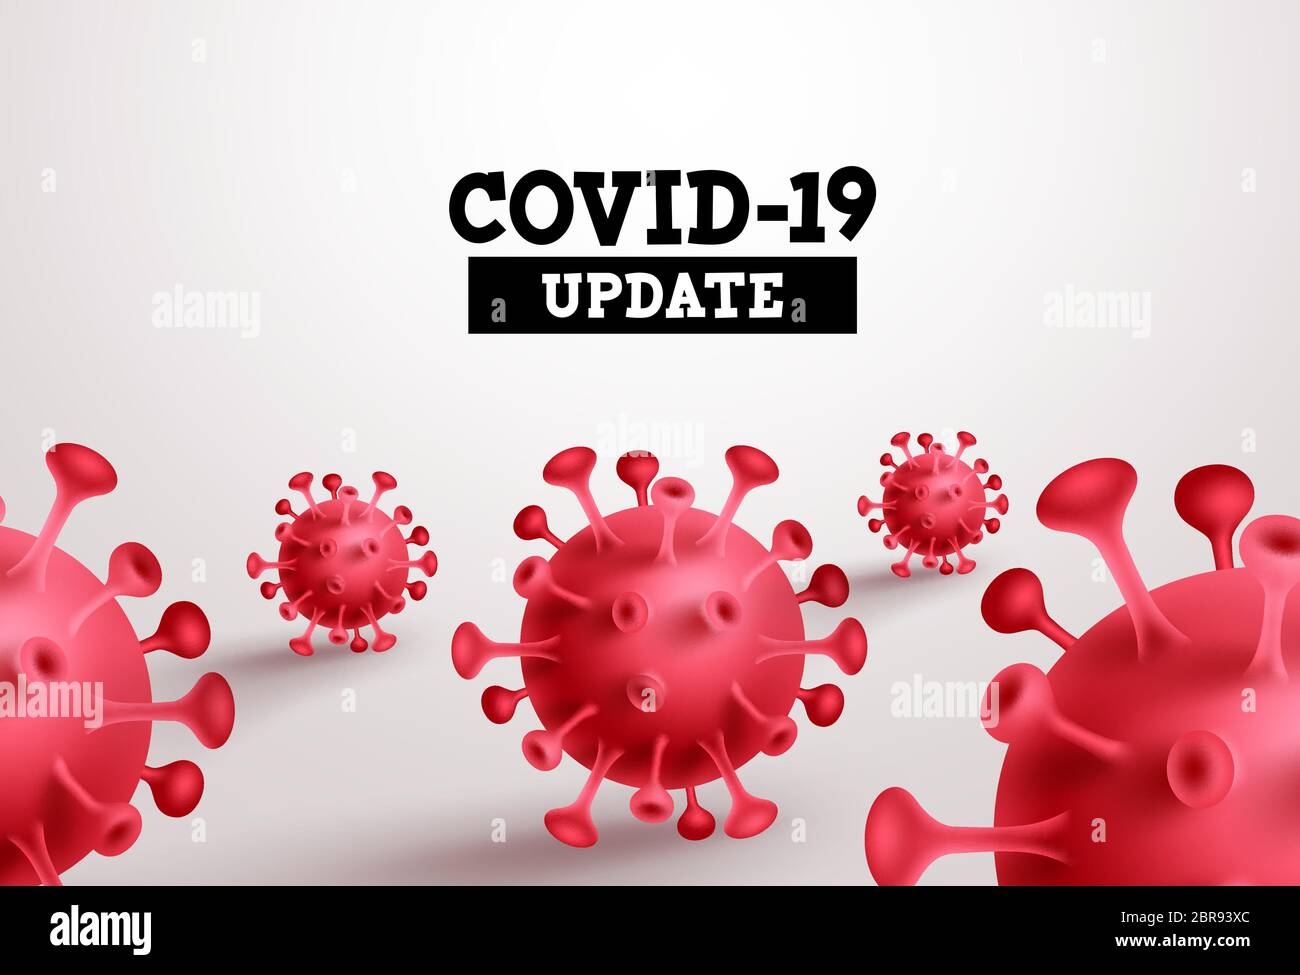 Covid-19 Update-Vektor-Banner. Covid19 Aktualisierungstext mit rotem Coronavirus auf weißem Hintergrund für den weltweiten Ausbruch des neuen Coronavirus. Stock Vektor